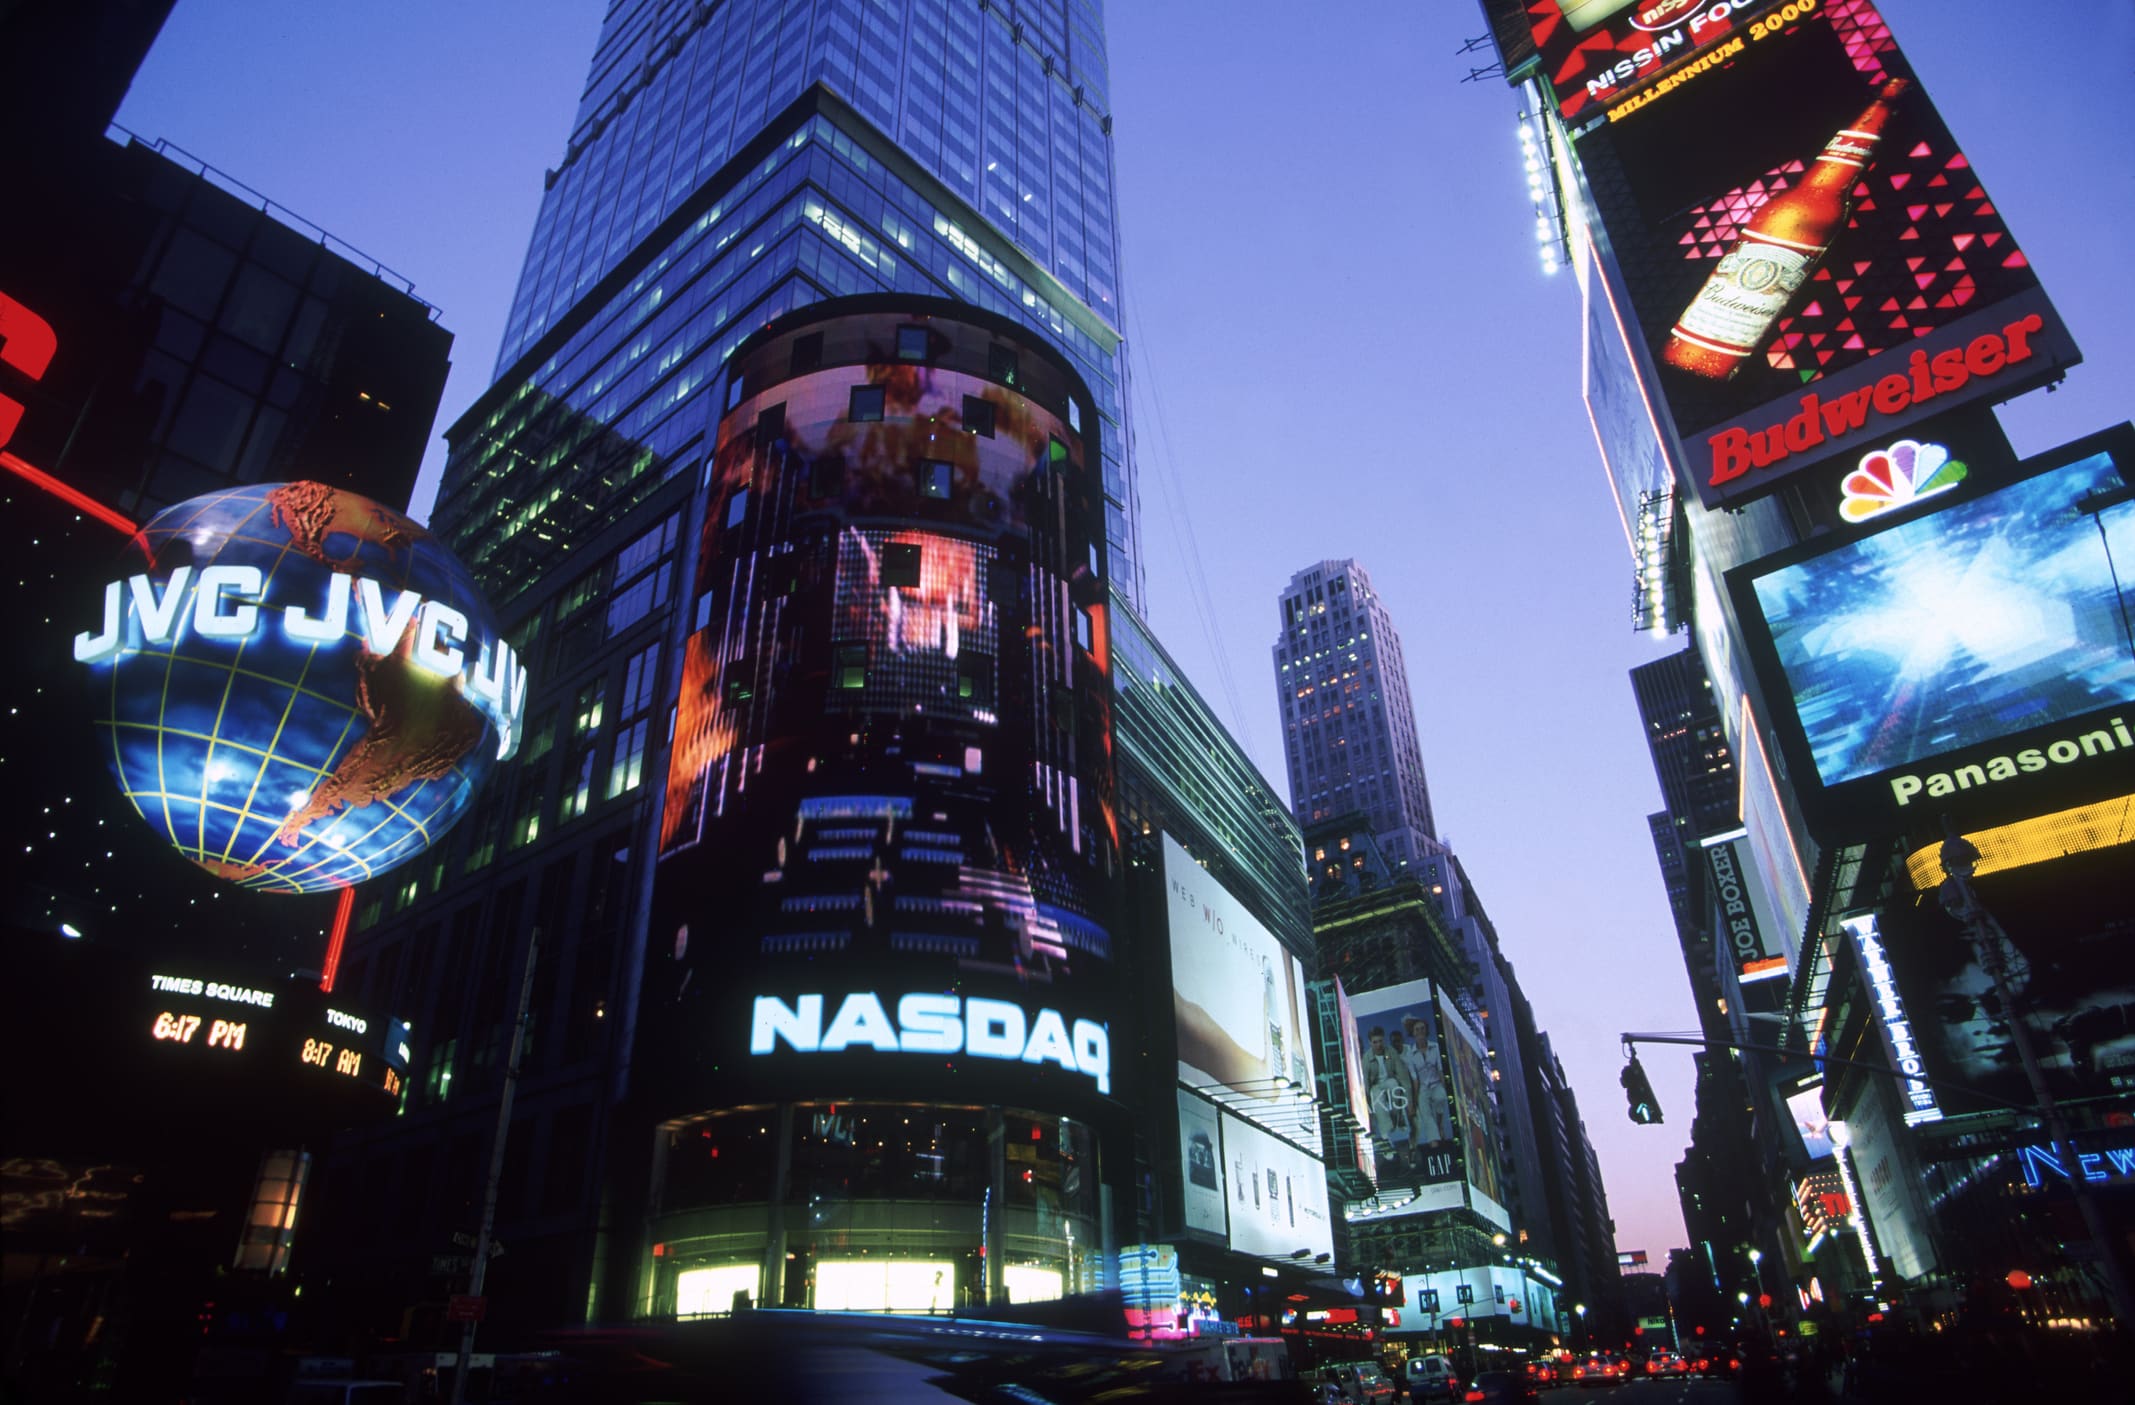 NASDAQ – Broadway & 44th Street, NYC